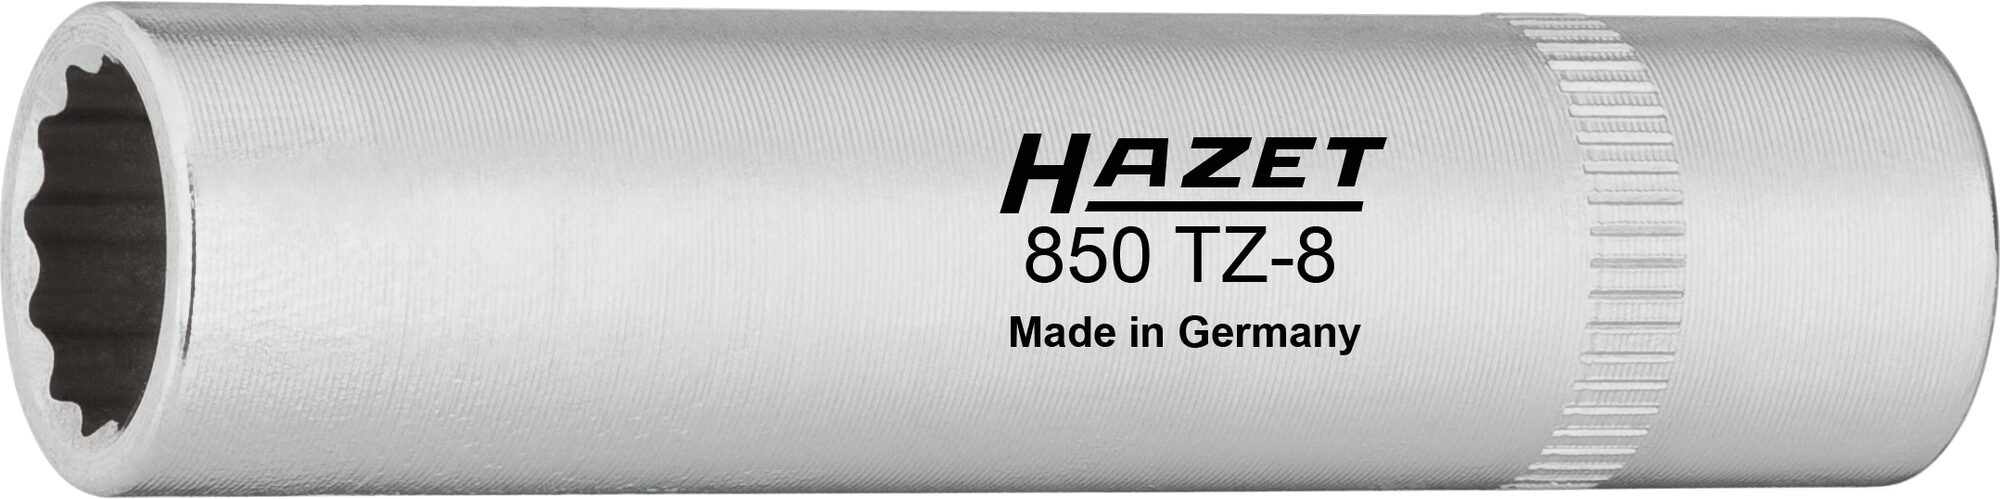 HAZET Kettenkastenverkleidungs-Einsatz 850TZ-8 · Vierkant hohl 6,3 mm (1/4 Zoll) · Außen Doppel-Sechskant-Tractionsprofil · 8 mm